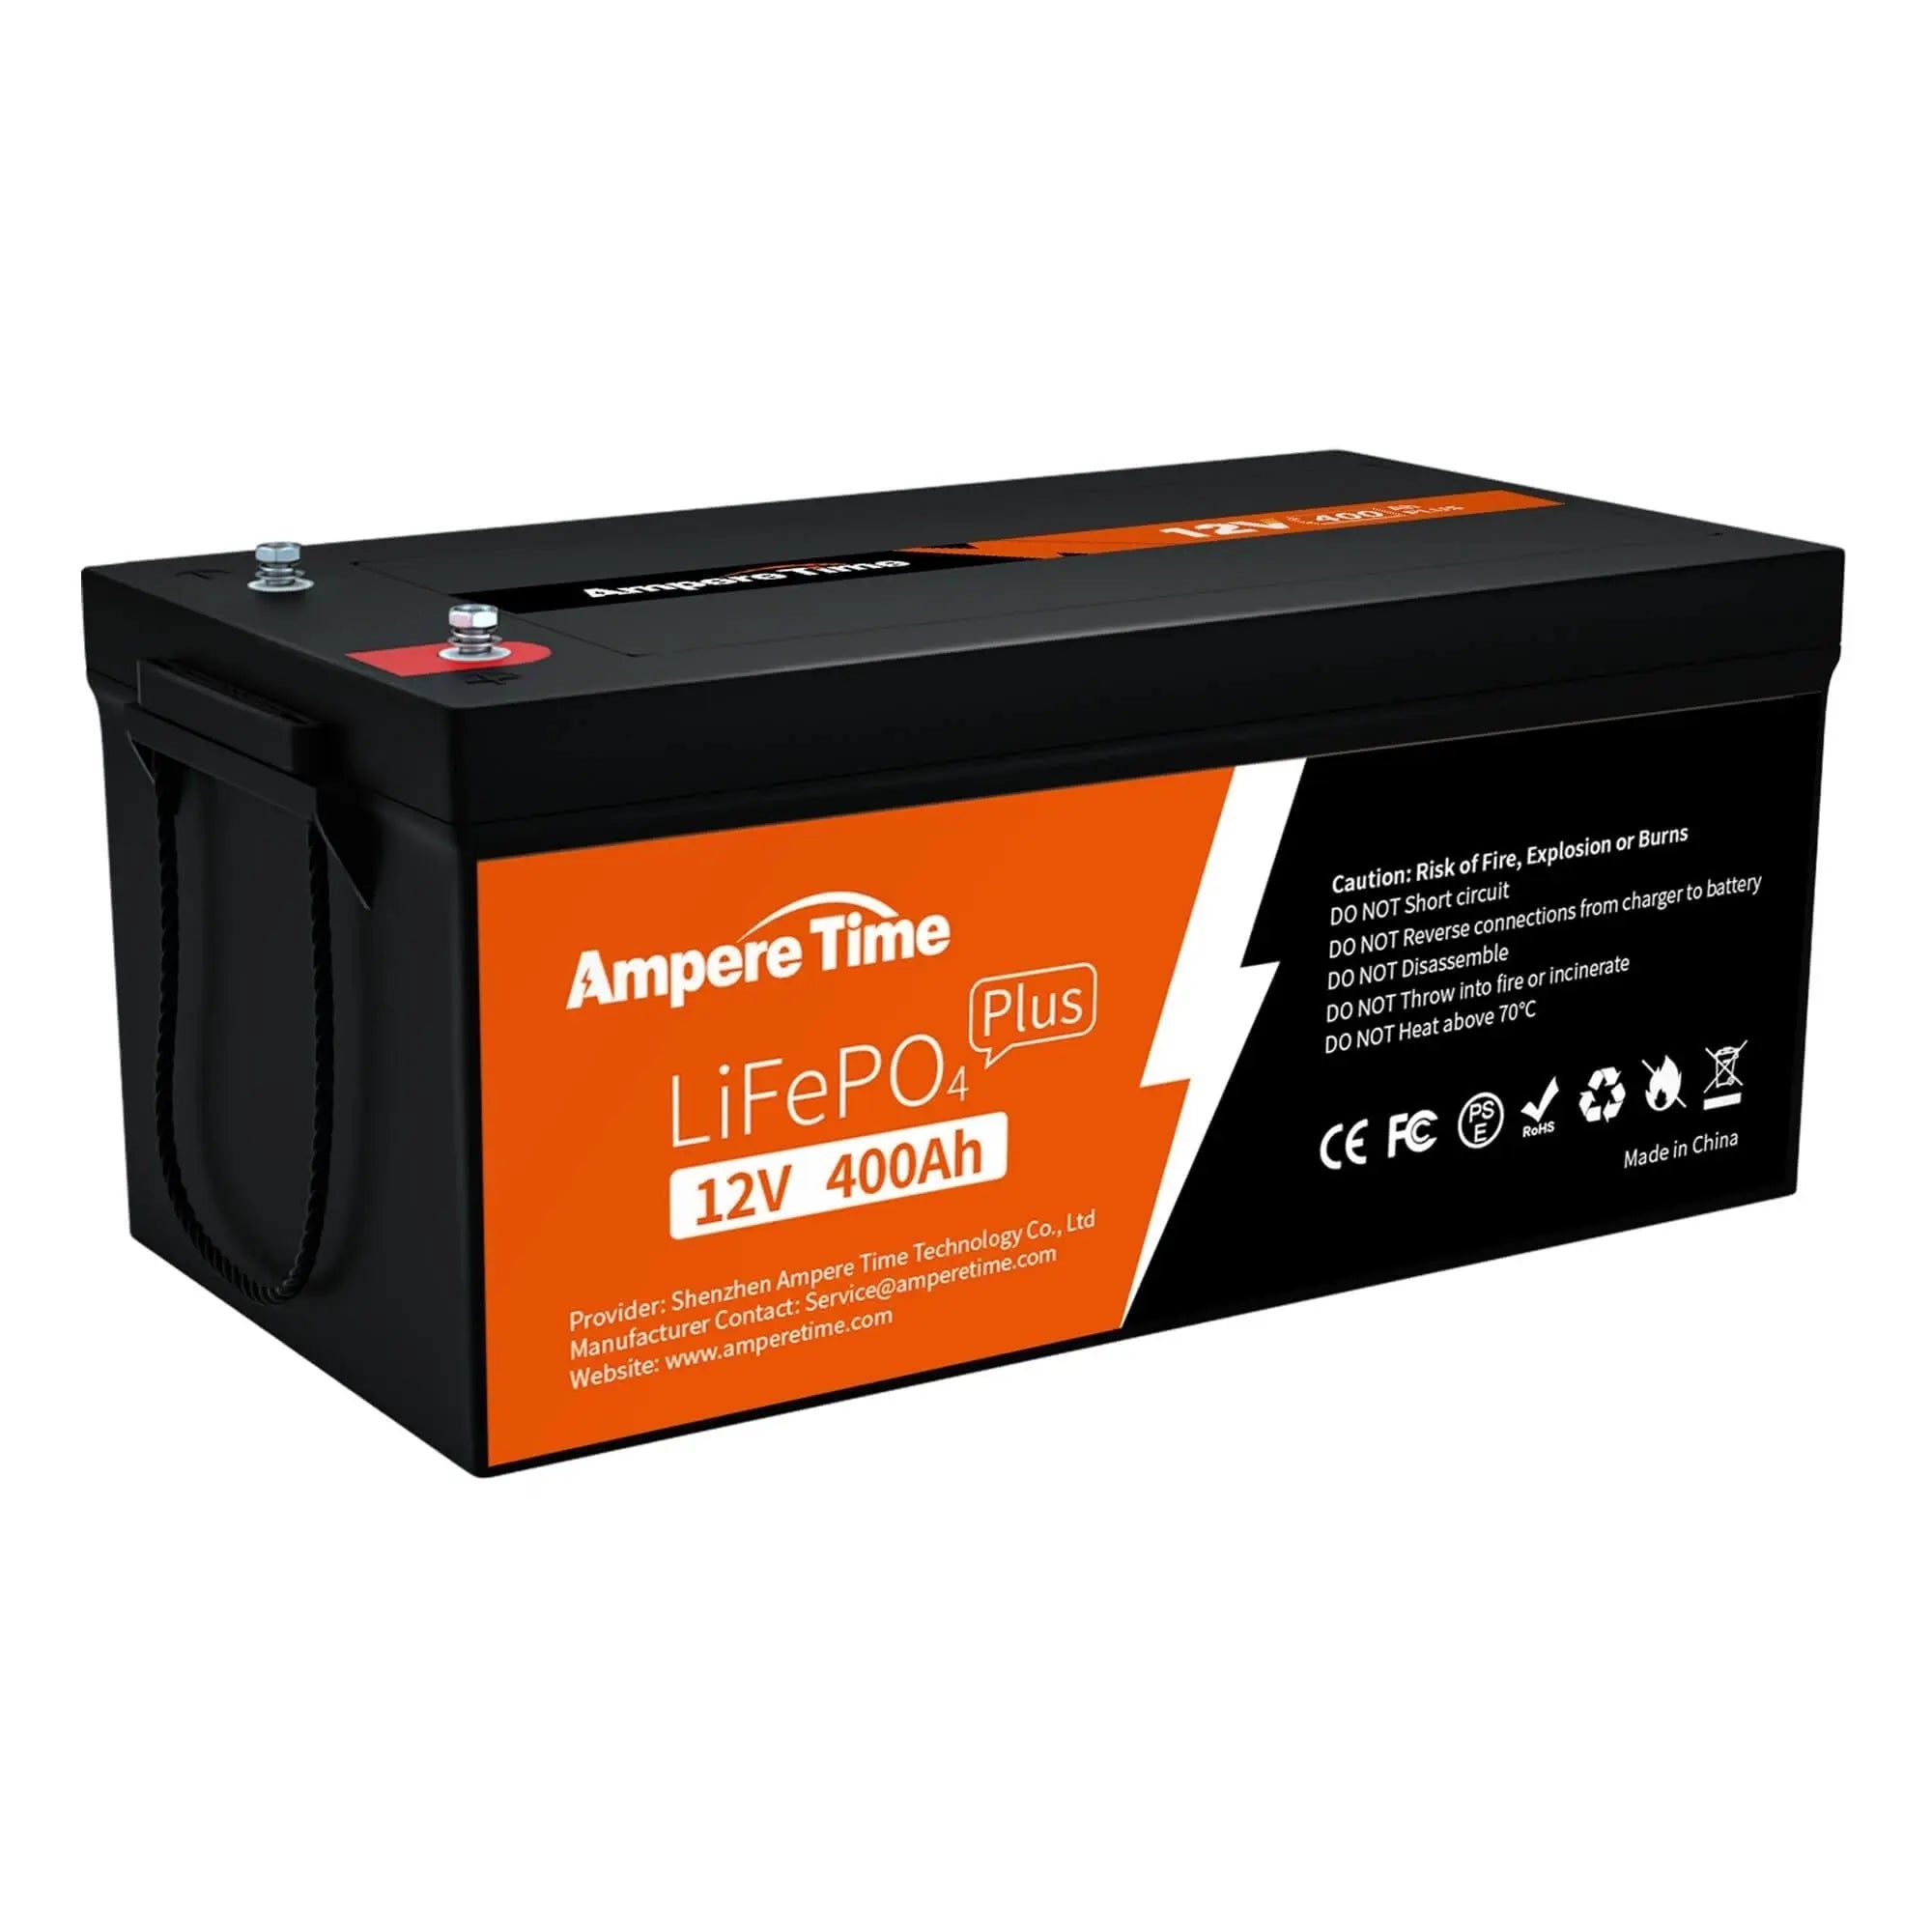 Ampere Time 12V 400Ah, Lithium LiFePO4 Battery – Amperetime-US